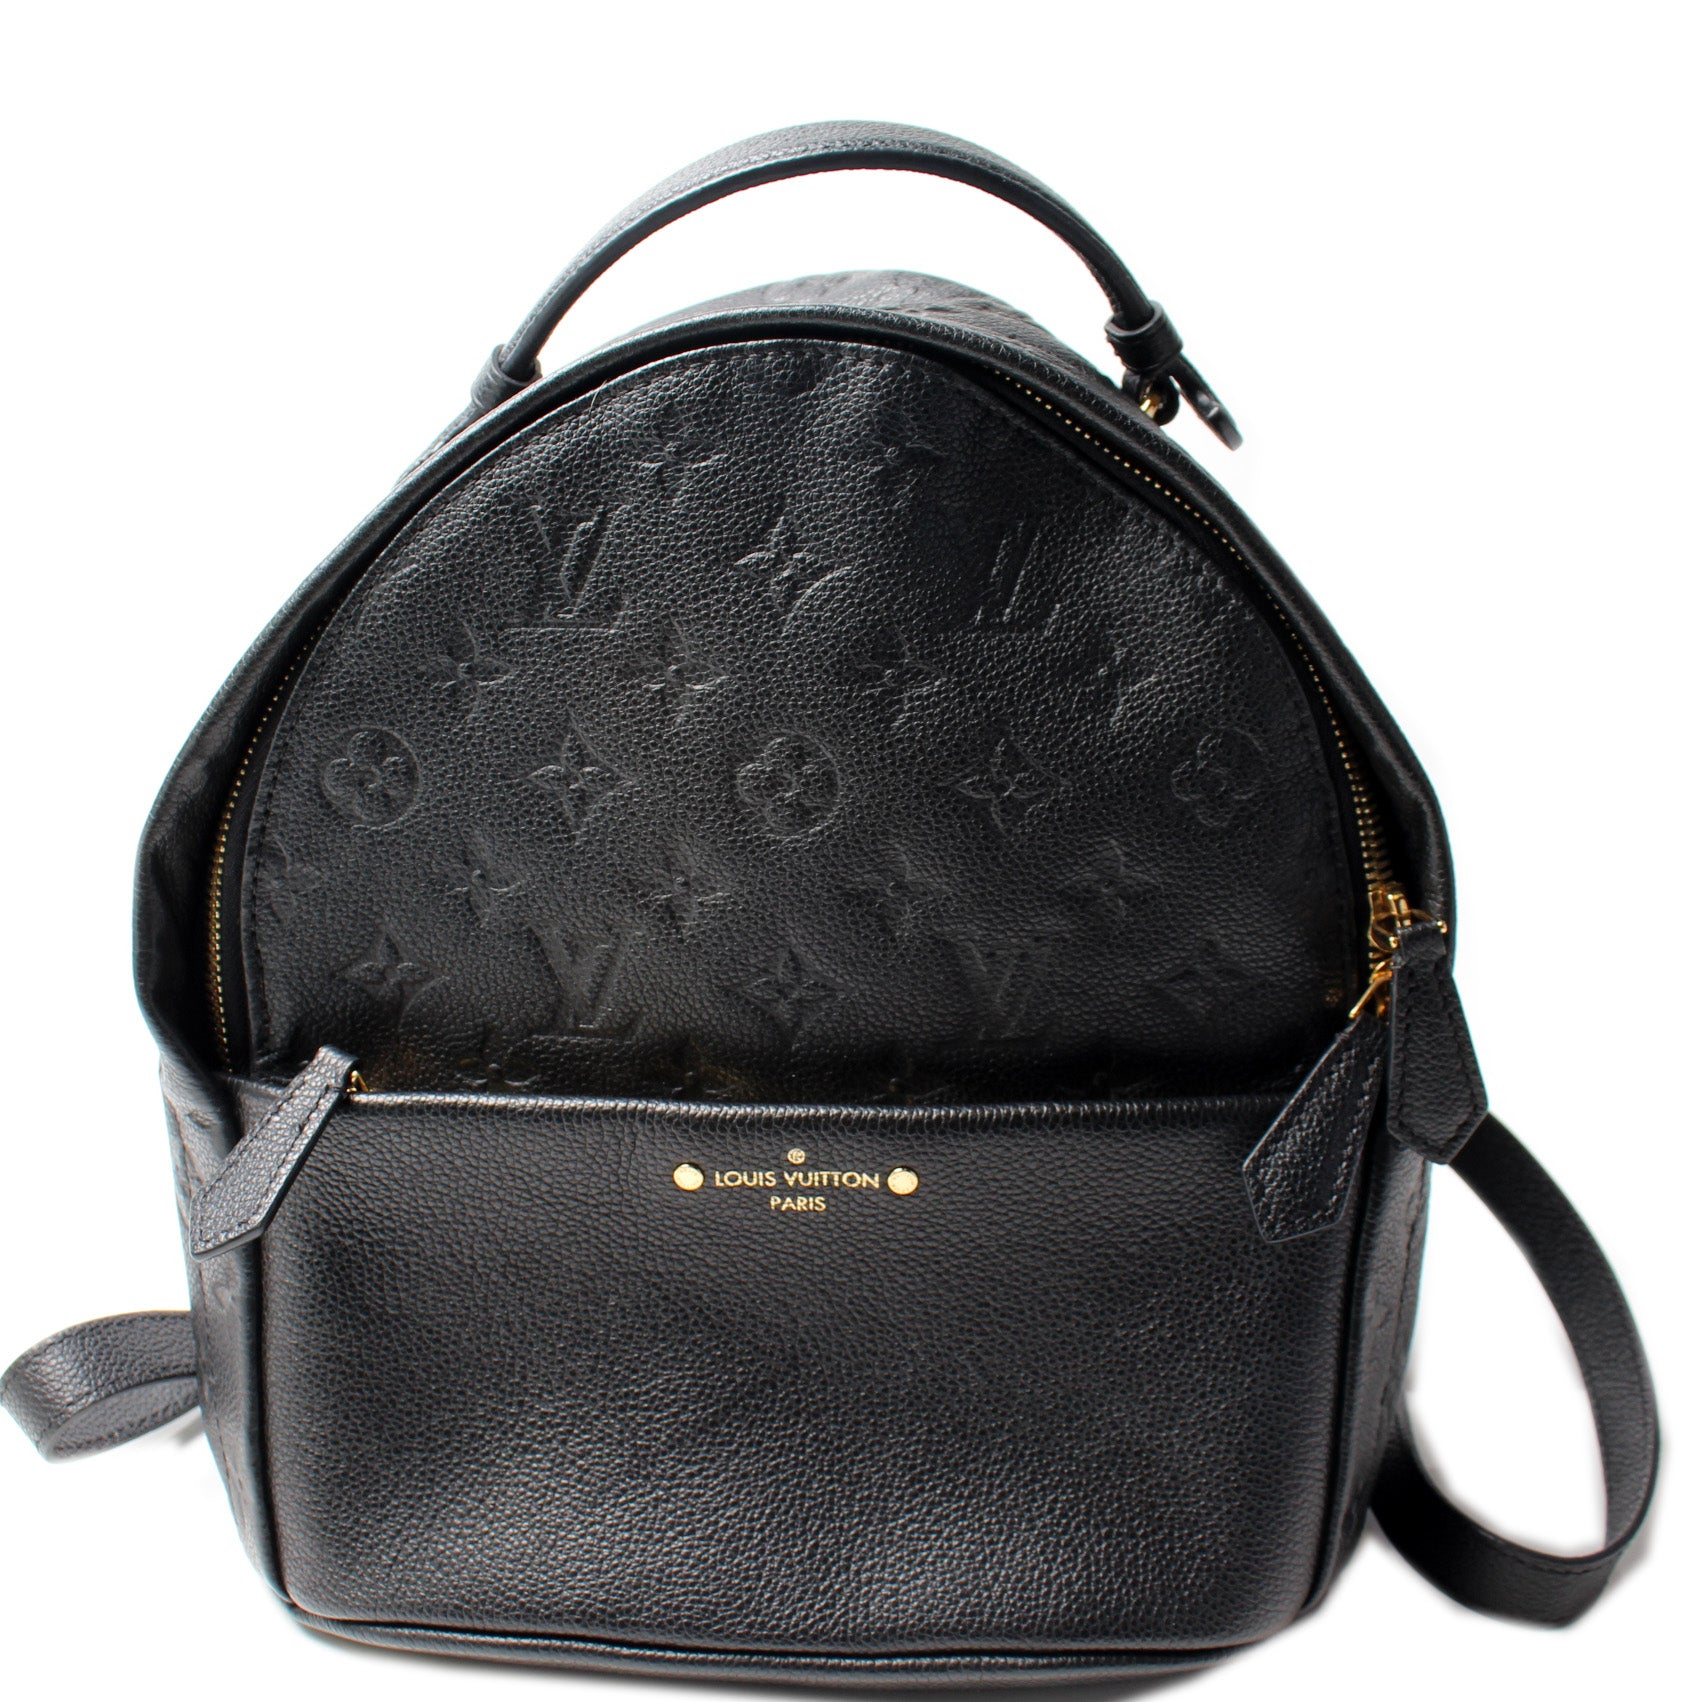 Authentic Louis Vuitton Sorbonne Handbag Black Epi Leather Satchel